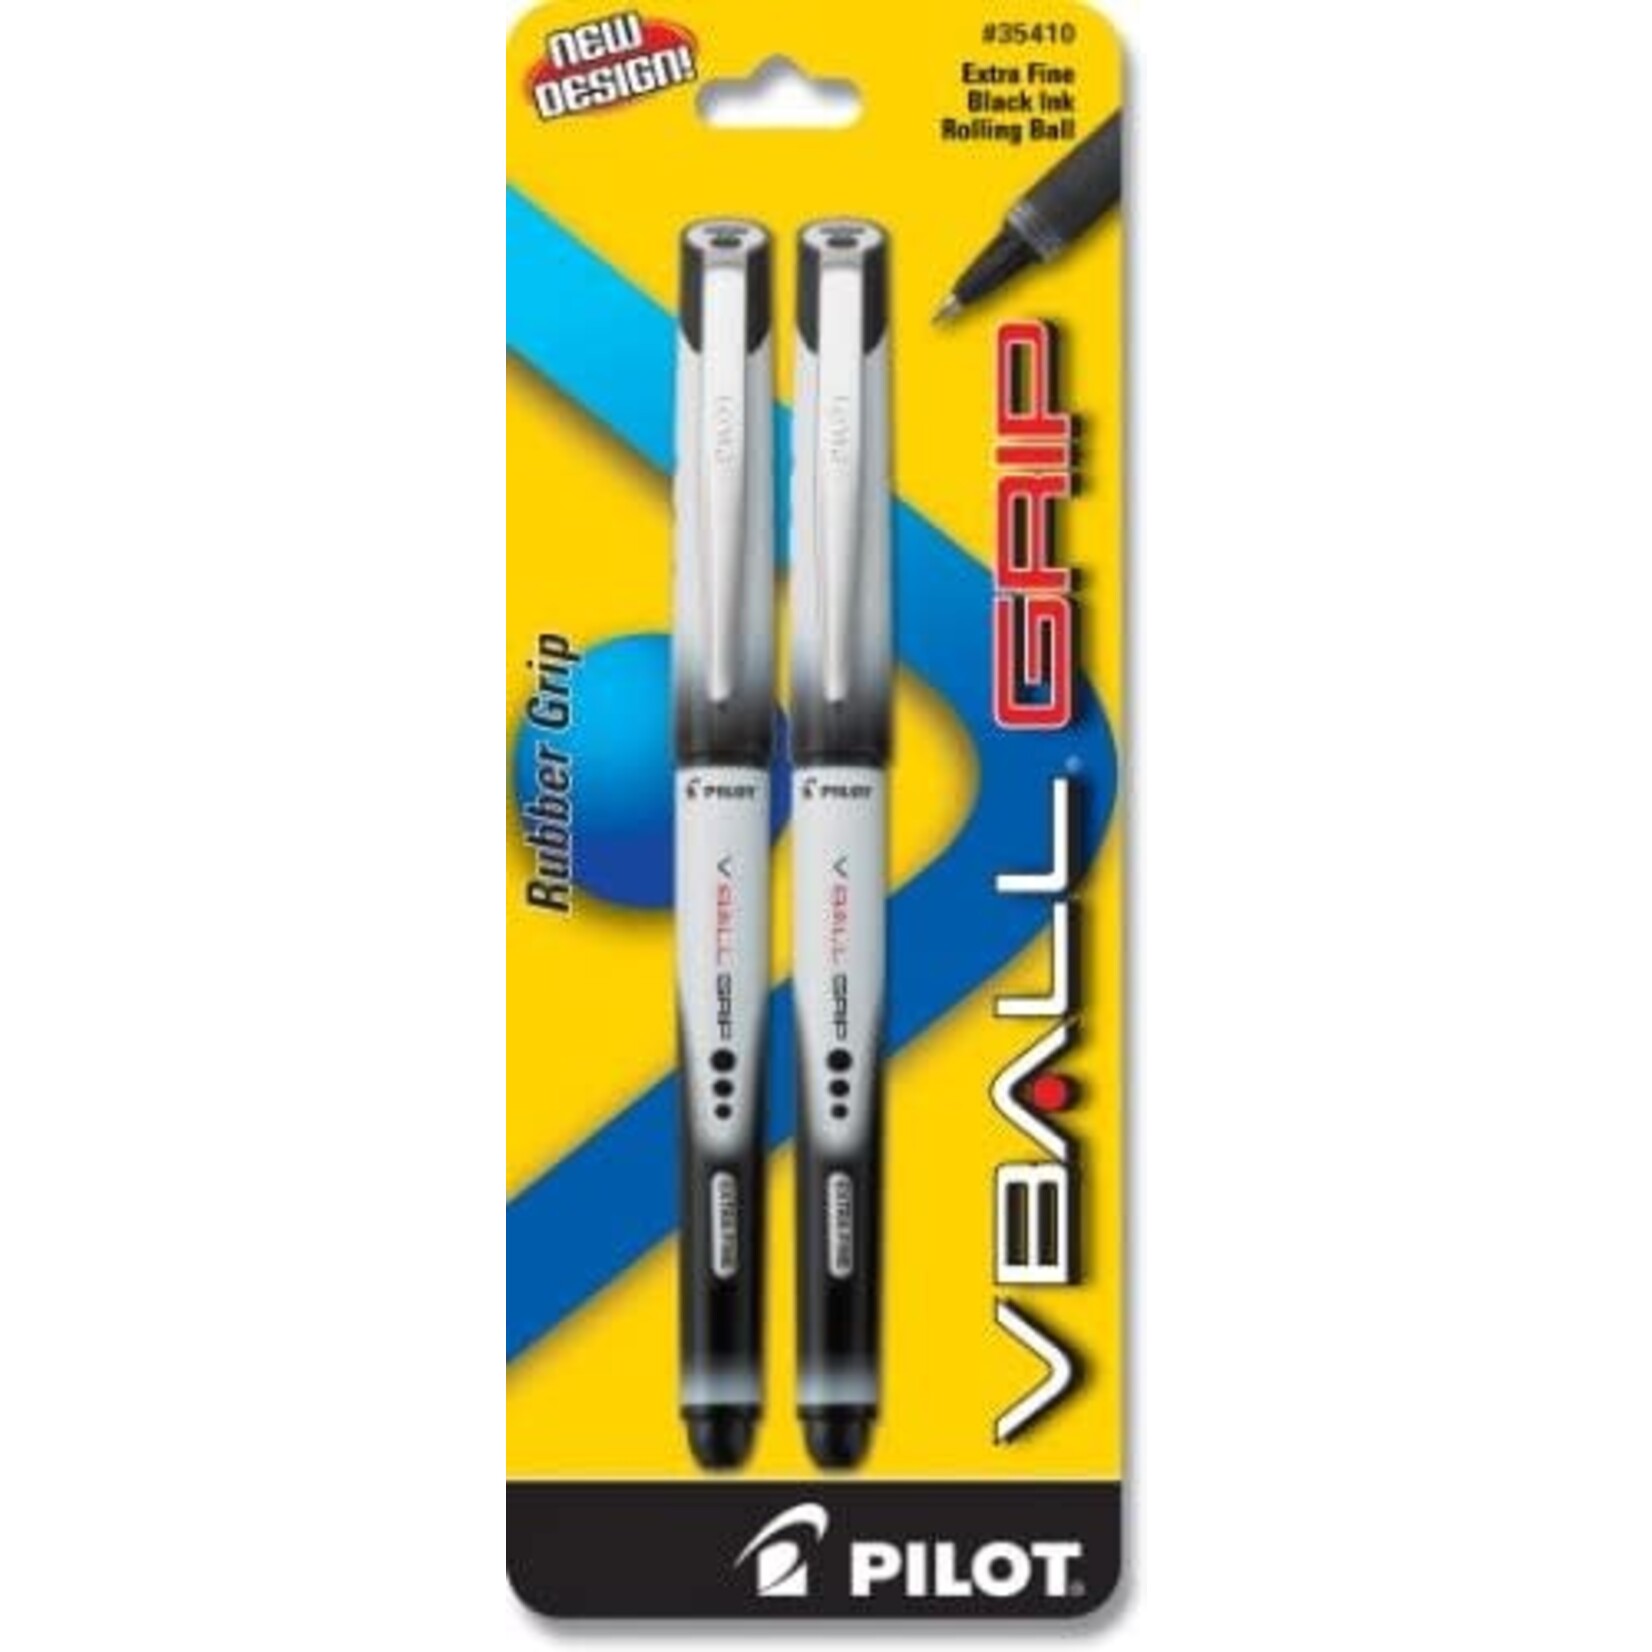 Pilot Pilot VBall Grip extra fine black pen 2 pk